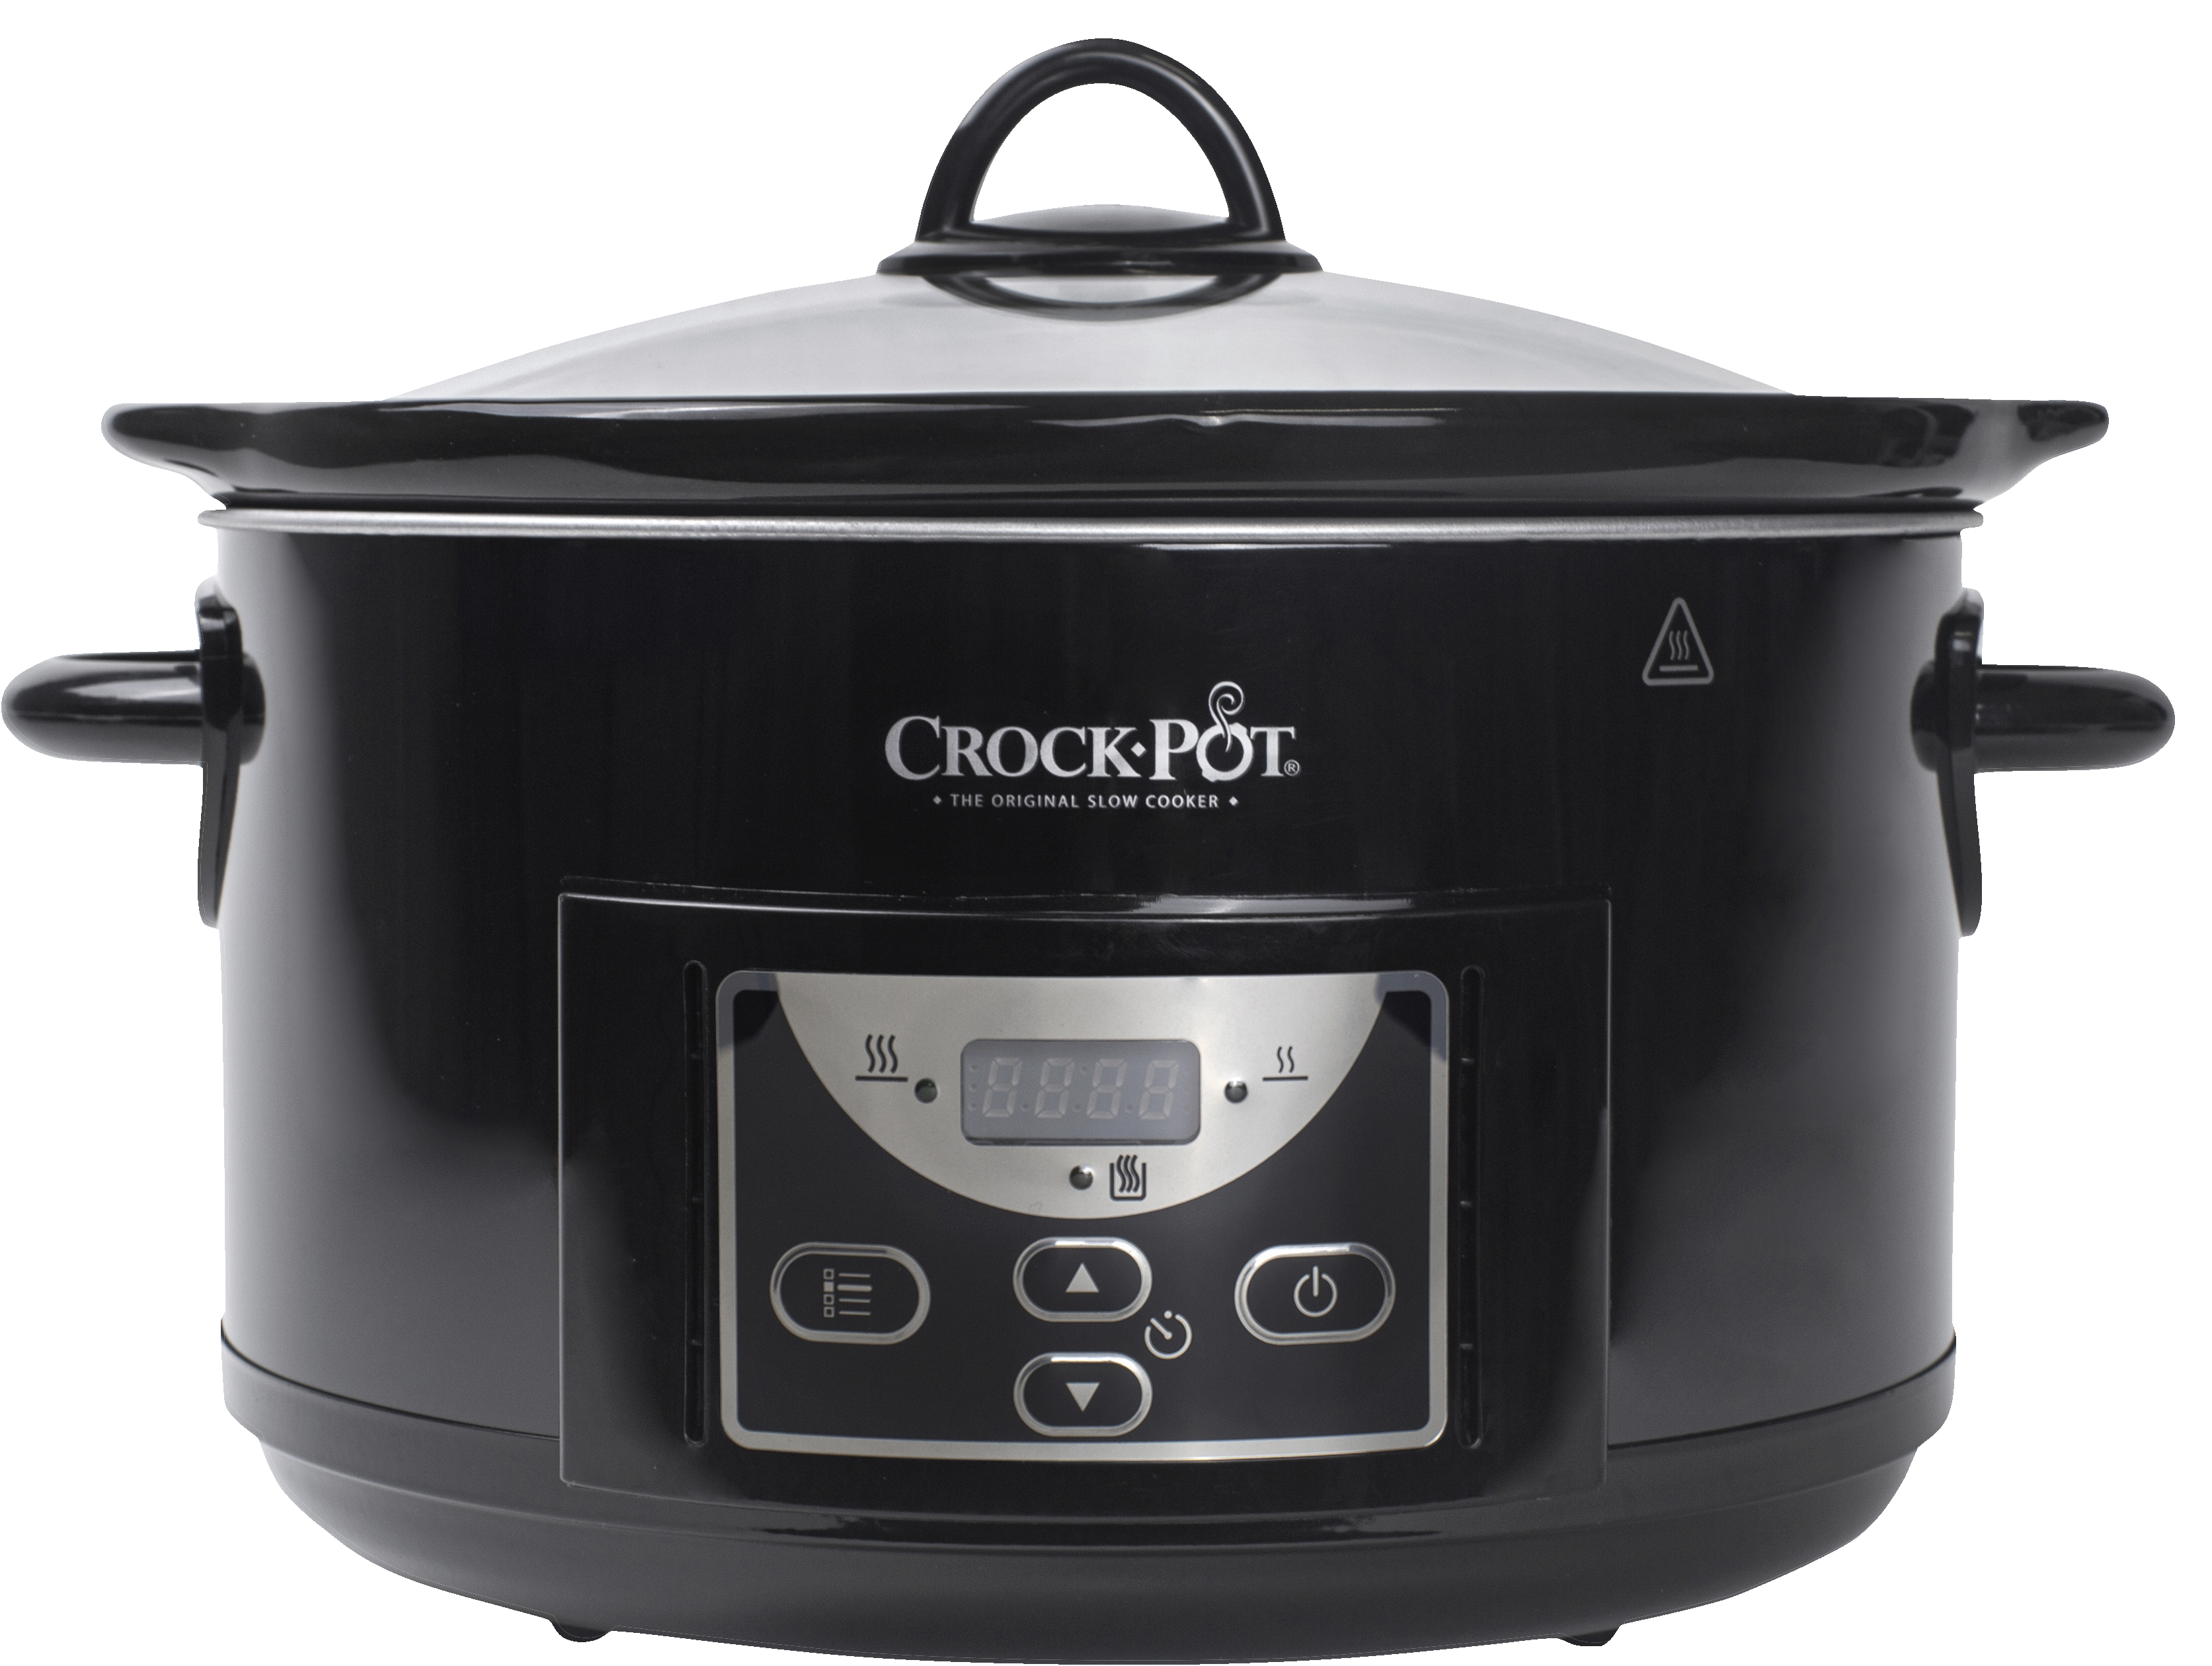 Crock-Pot slow cooker 201009 - Kjøkkenapparater - Elkjøp